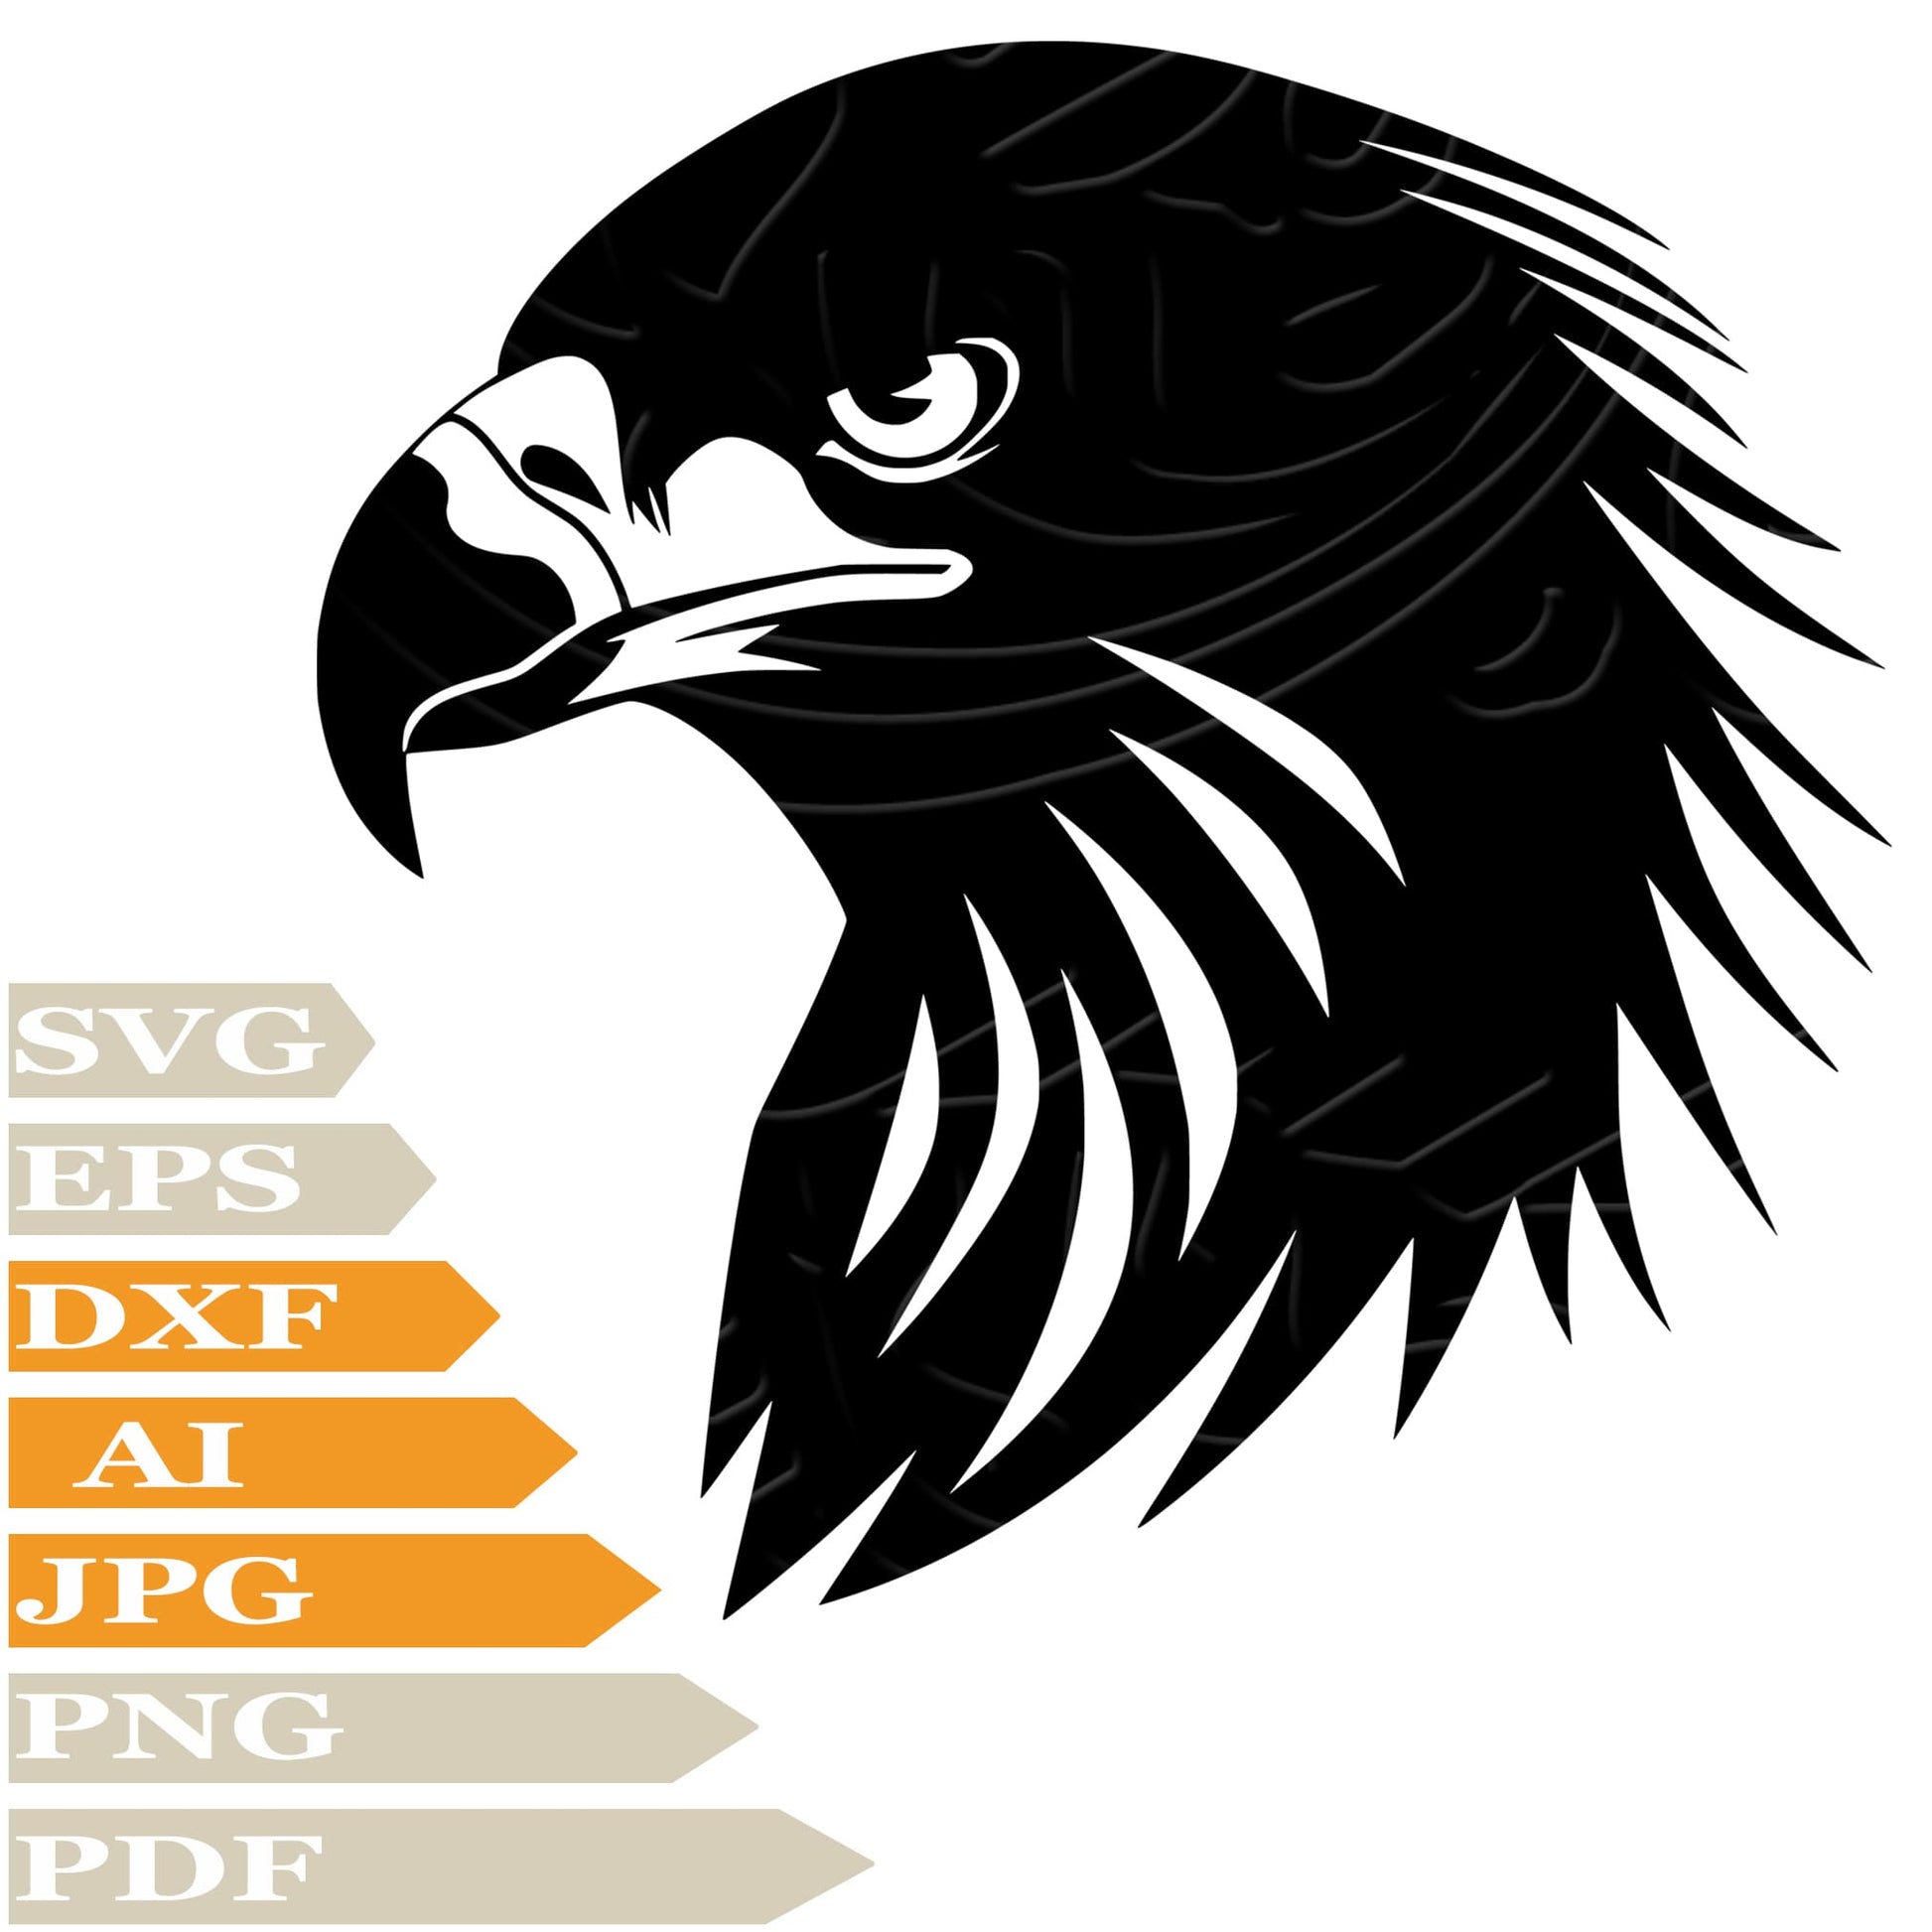 Sofvintage-Eagle Head-Eagle SVG-Eagle Head SVG Design-Bird Eagle SVG File-Eagle Head Digital Vector Download-Bird Eagle PNG-Eagle For Cricut-Eagle Clip art-bird Eagle Cut File-Eagle Head T-Shirt-Eagle Wall Sticker-Eagle Head For Tattoo-Eagle Printable-Eagle Head Silhouette